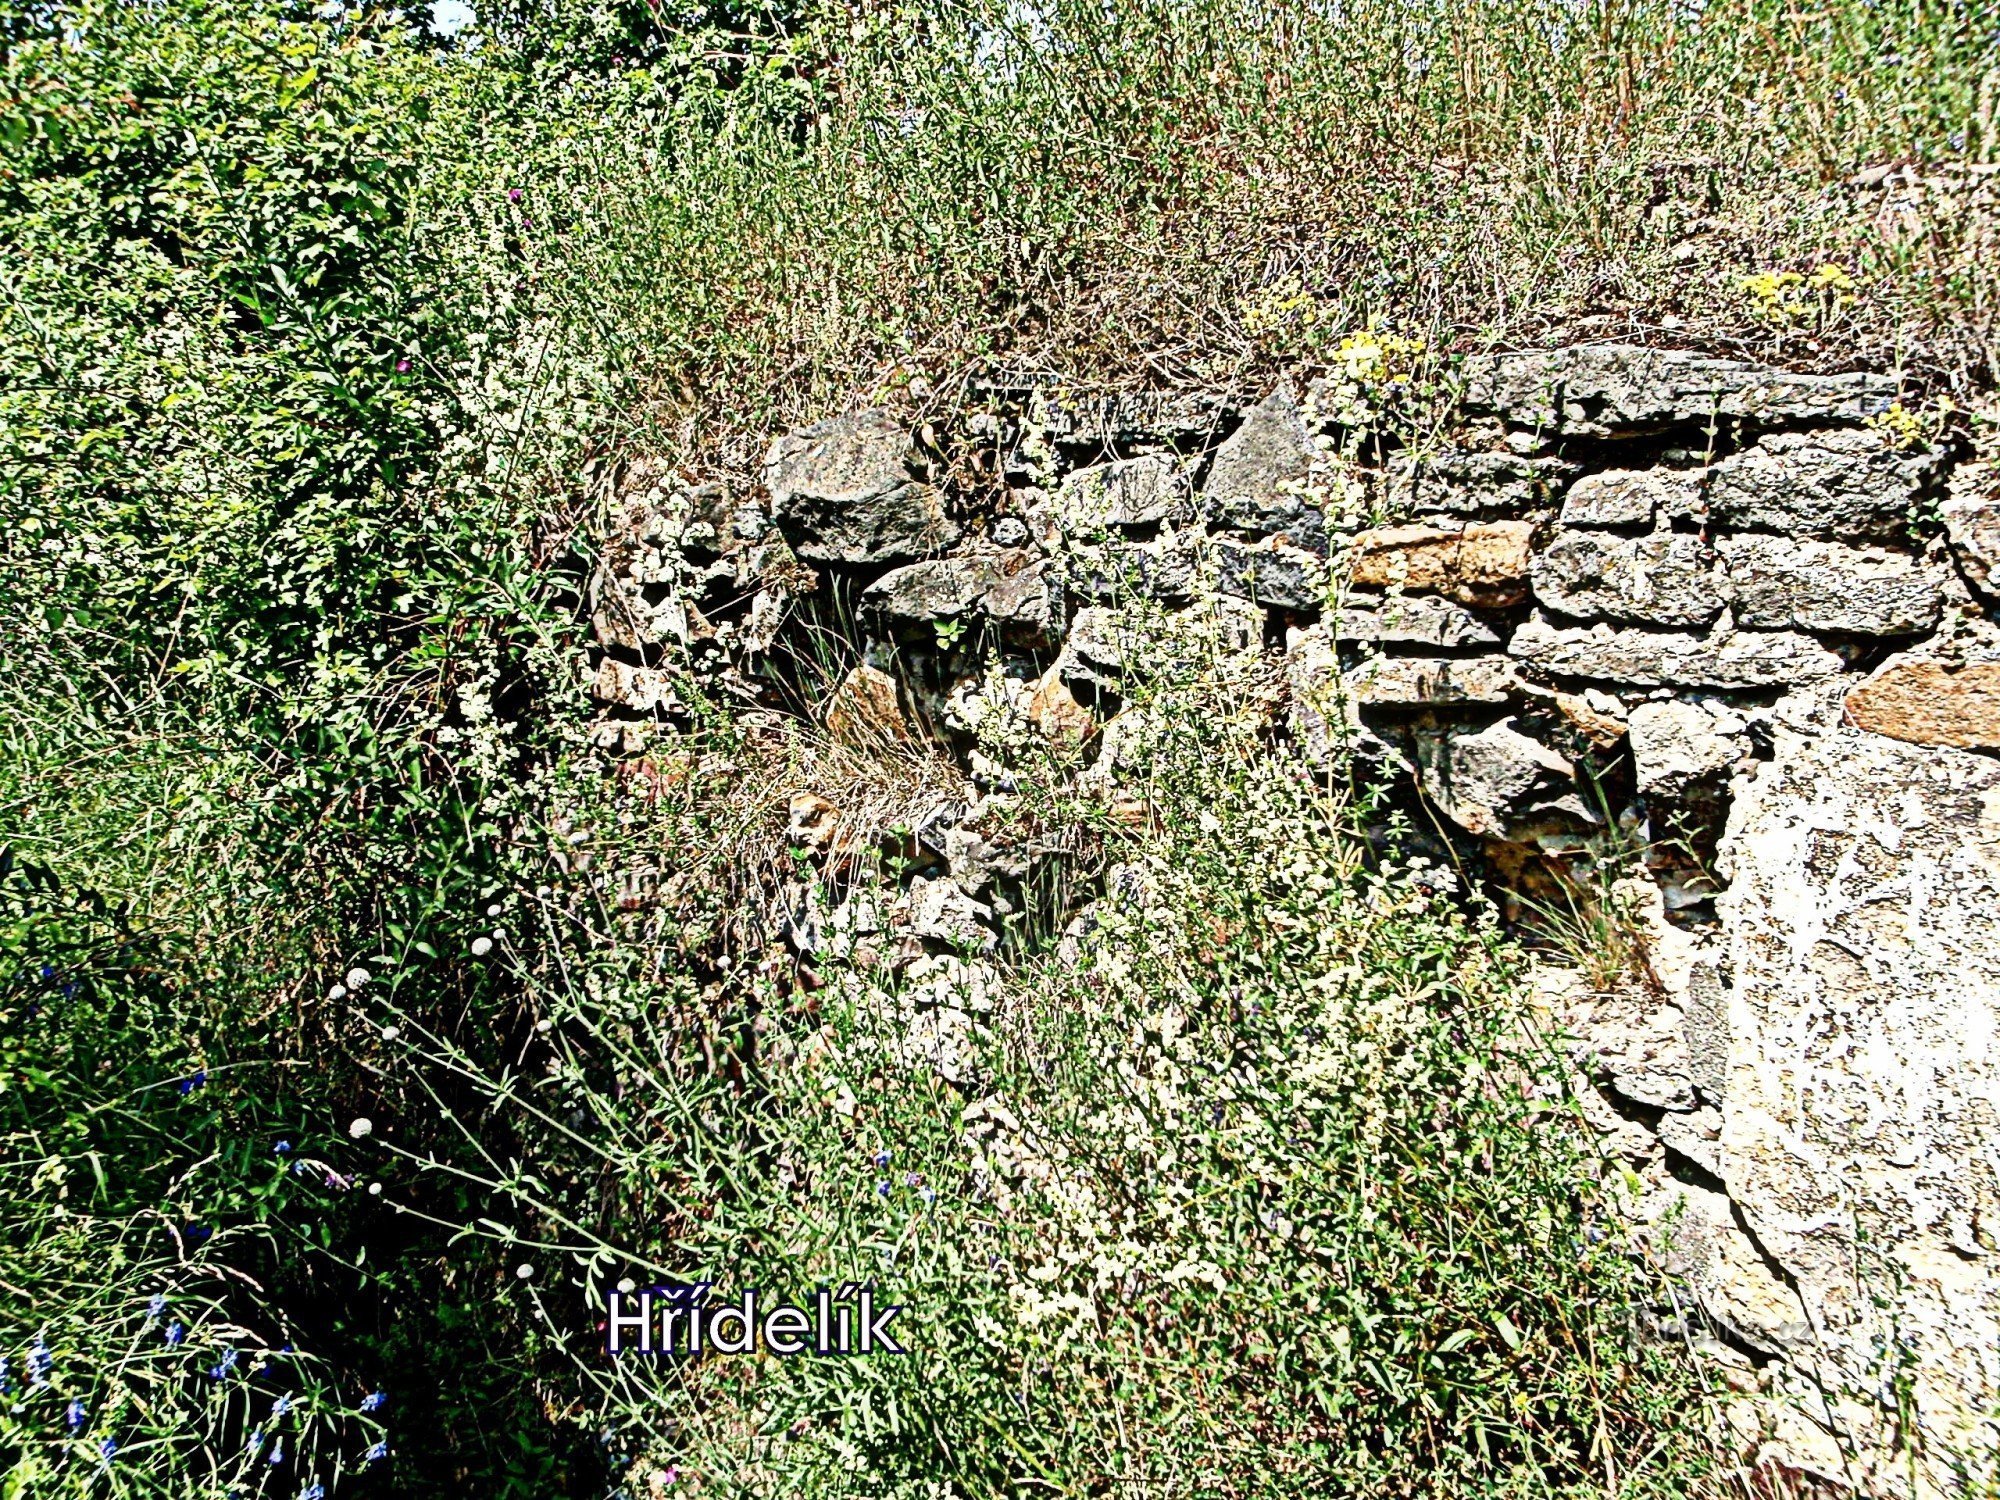 Blíževedly - ruinele Castelului Hřídelík